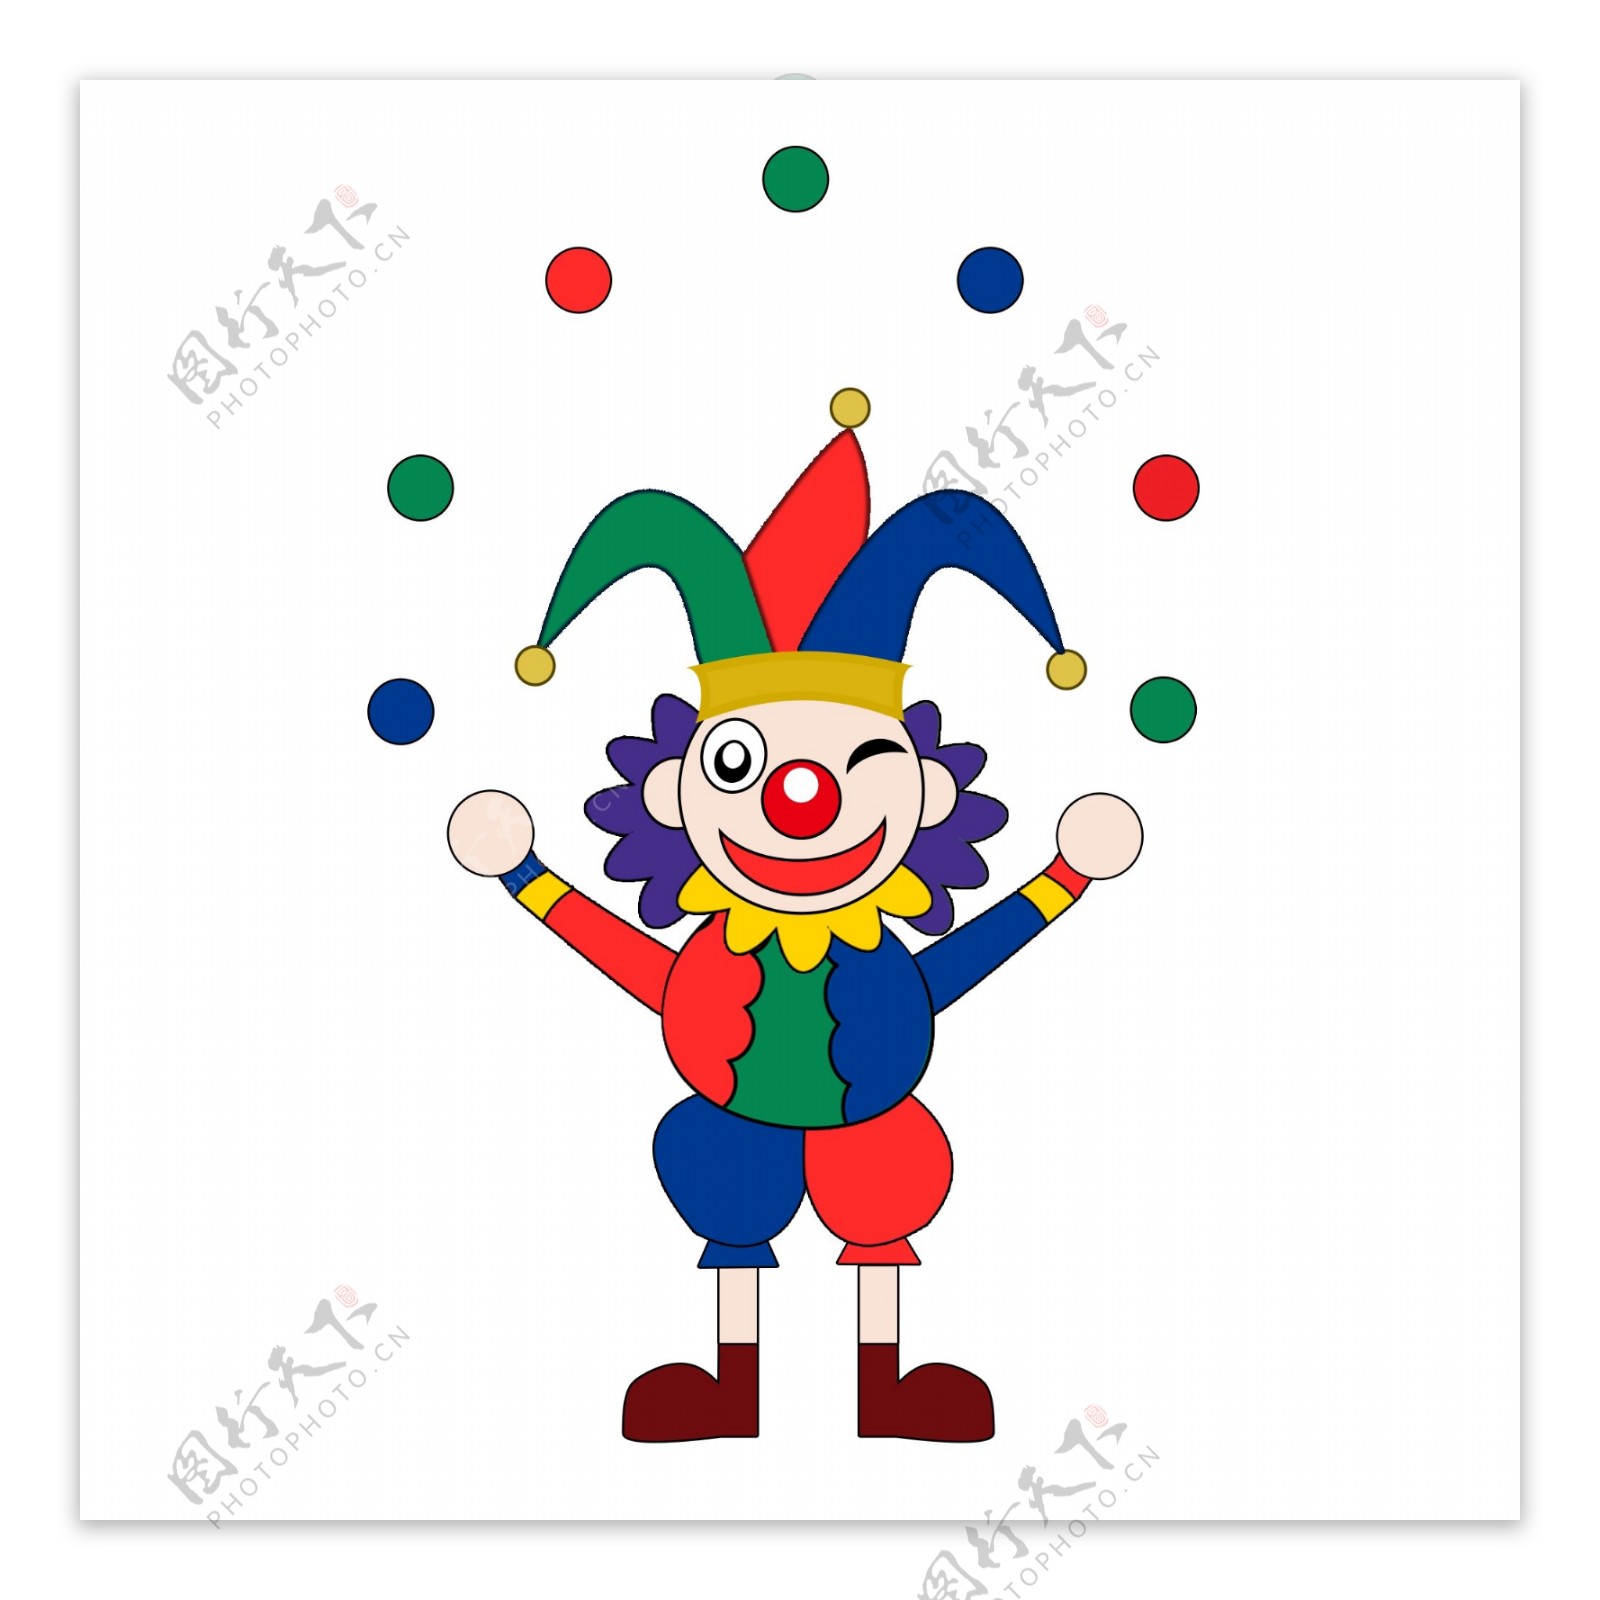 小丑人物形象卡通愚人节蓝绿红元素